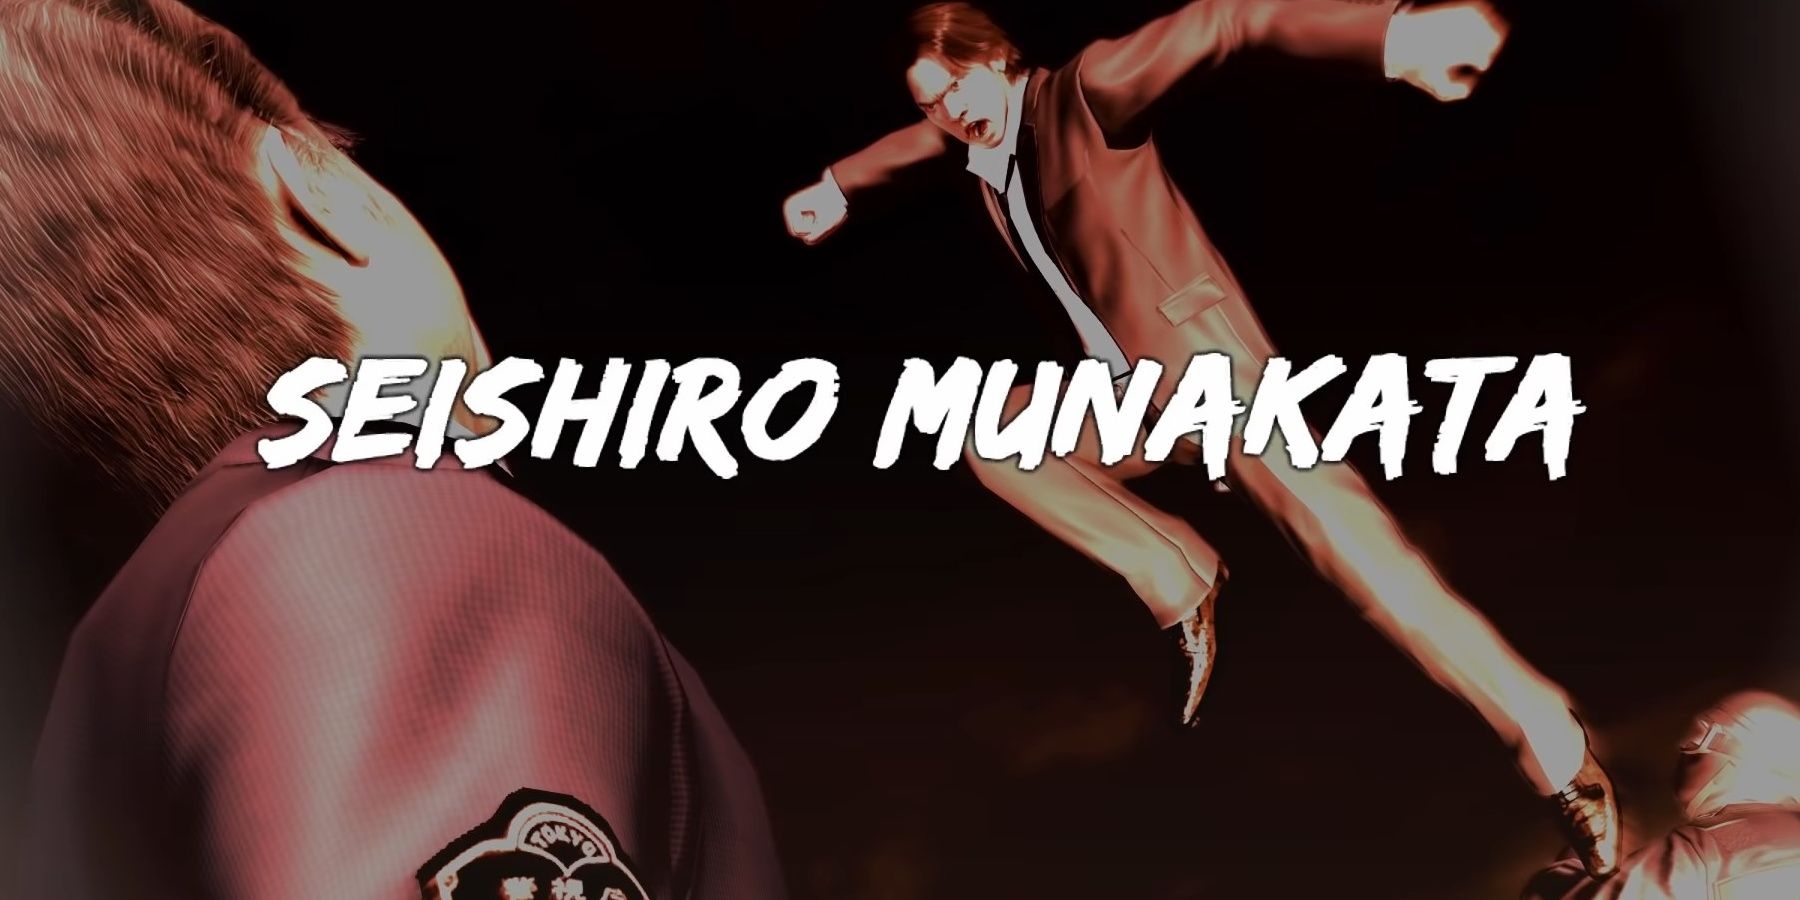 Tanimura leaping at Munakata in the final boss title card in Yakuza 4.